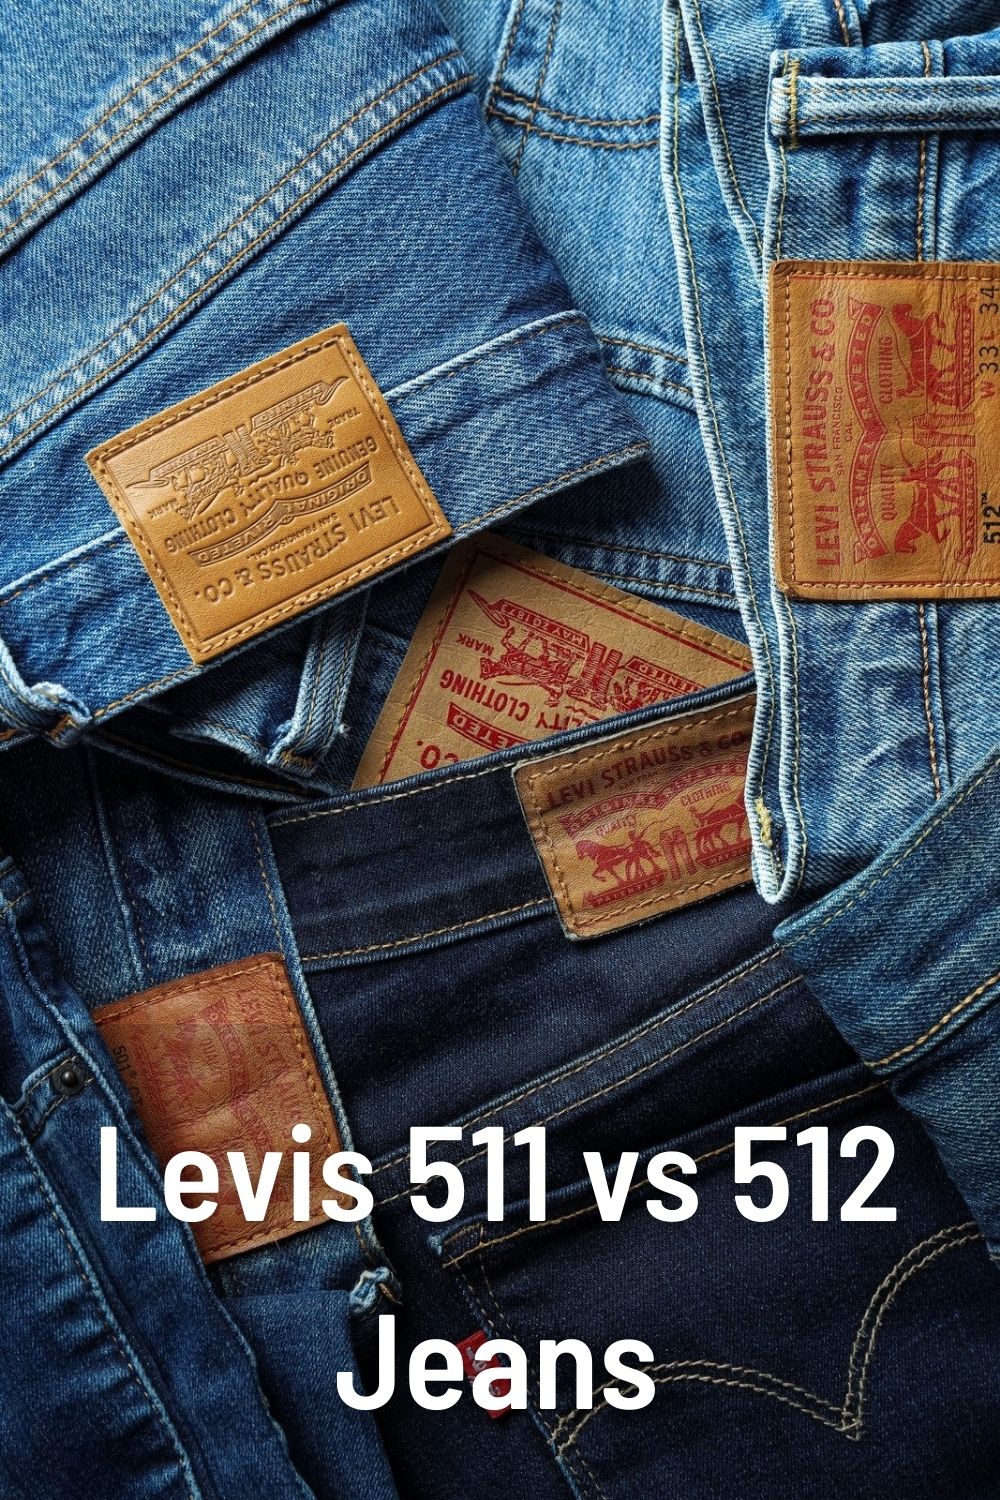 Levis 511 vs 512 Jeans